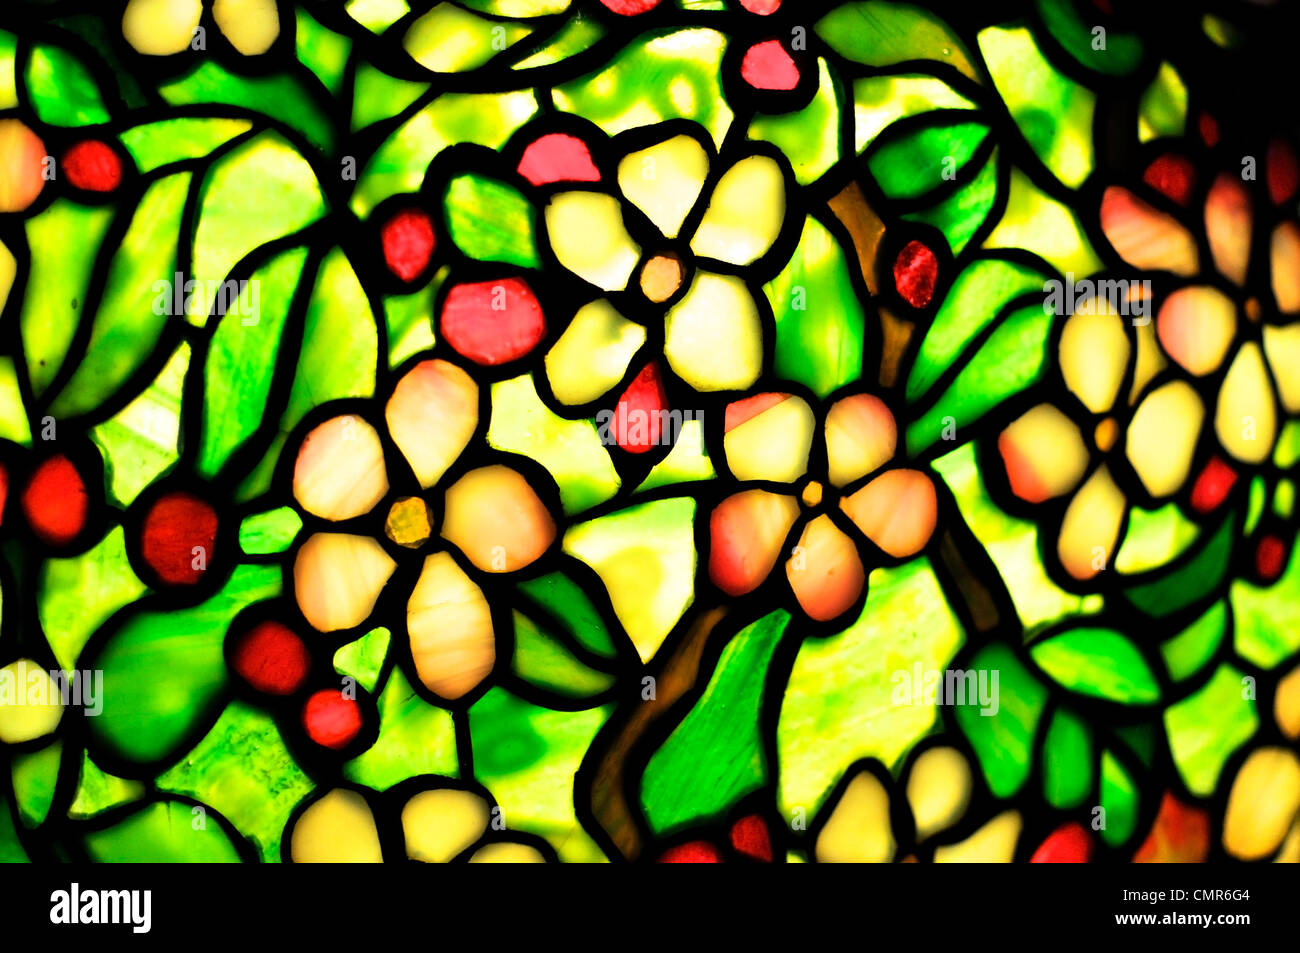 Dettaglio di un paralume realizzato in vetro colorato. Questo particolare stile art nouveau è chiamato stile Tiffany. Foto Stock